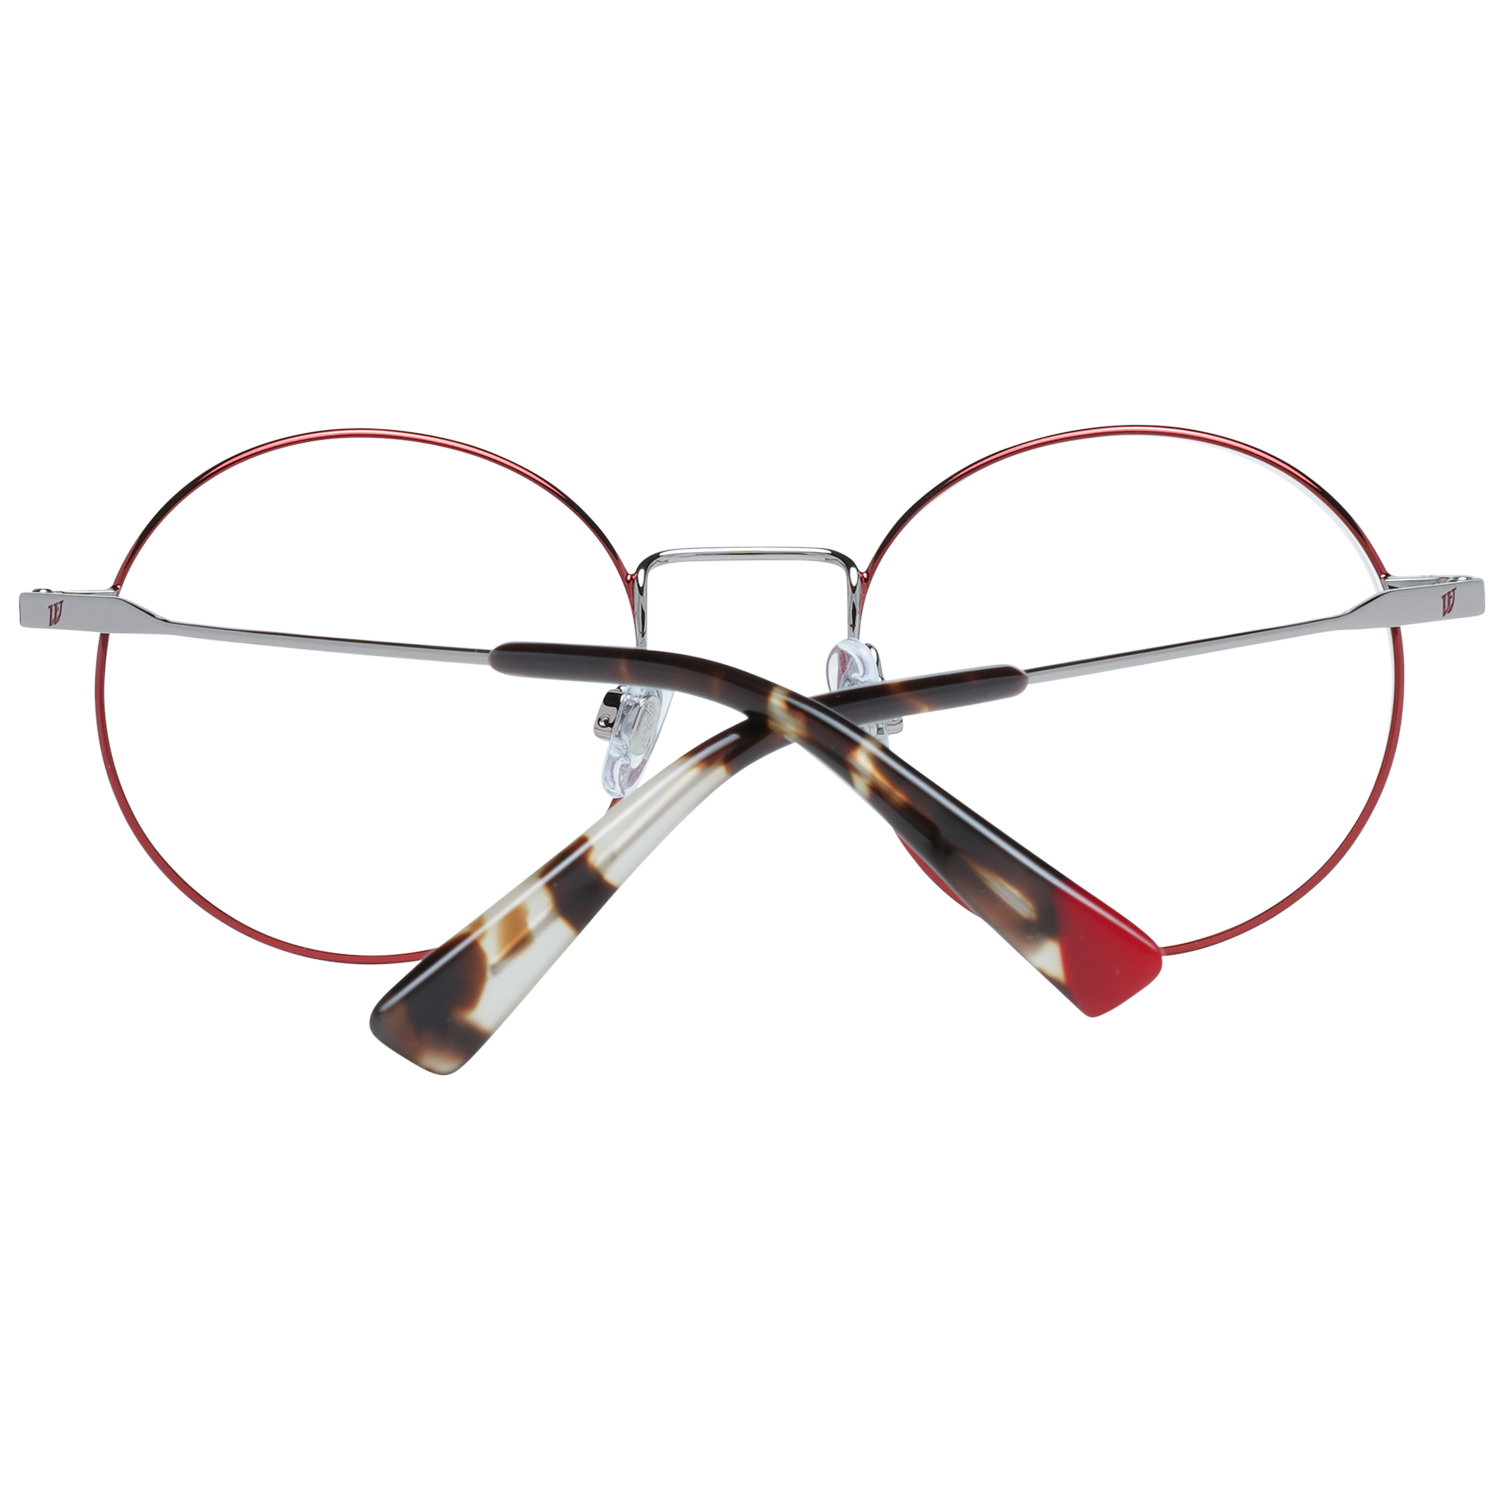 Web Frames Web Optical Frame WE5274 012 49 Eyeglasses Eyewear UK USA Australia 